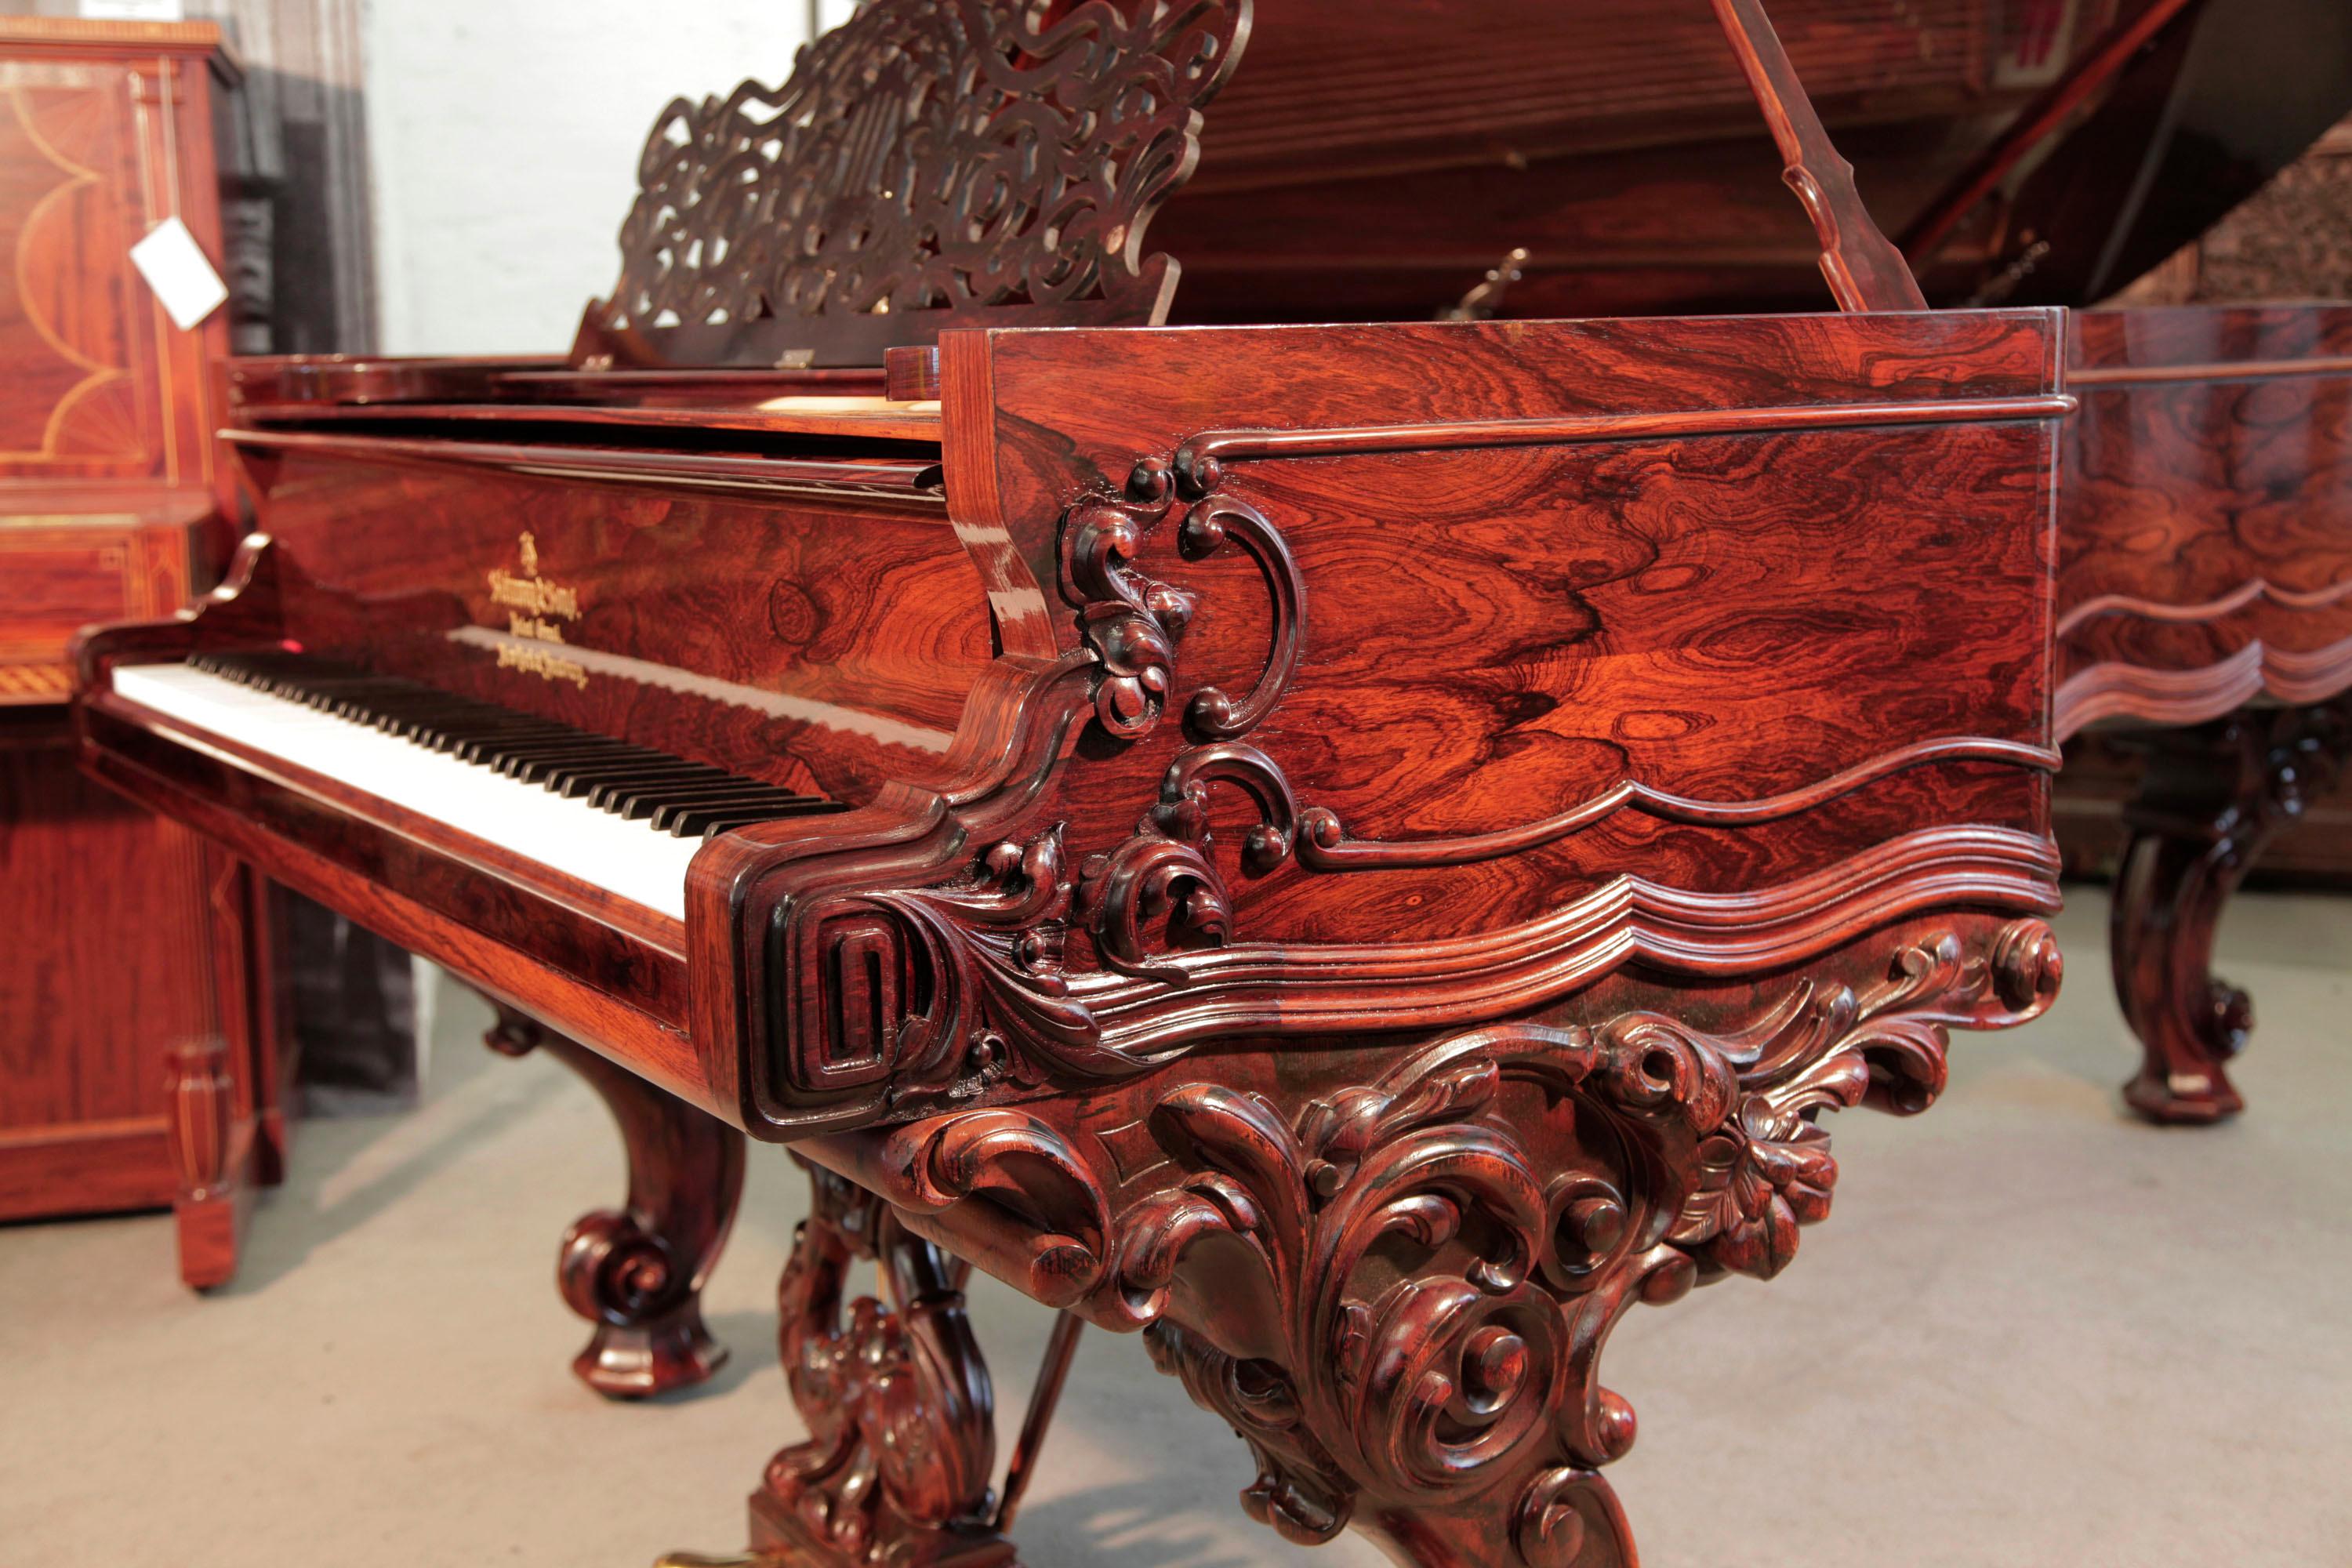 Steinway & Sons Centennial Konzertflügel im Rokoko-Stil, 1874, mit Palisandergehäuse, filigranem Notenpult und kunstvoll geschnitzten, rückseitigen Rollbeinen. Das Klavier ist wiederhergestellt.

Die Klavierwange weist einen geschnitzten,